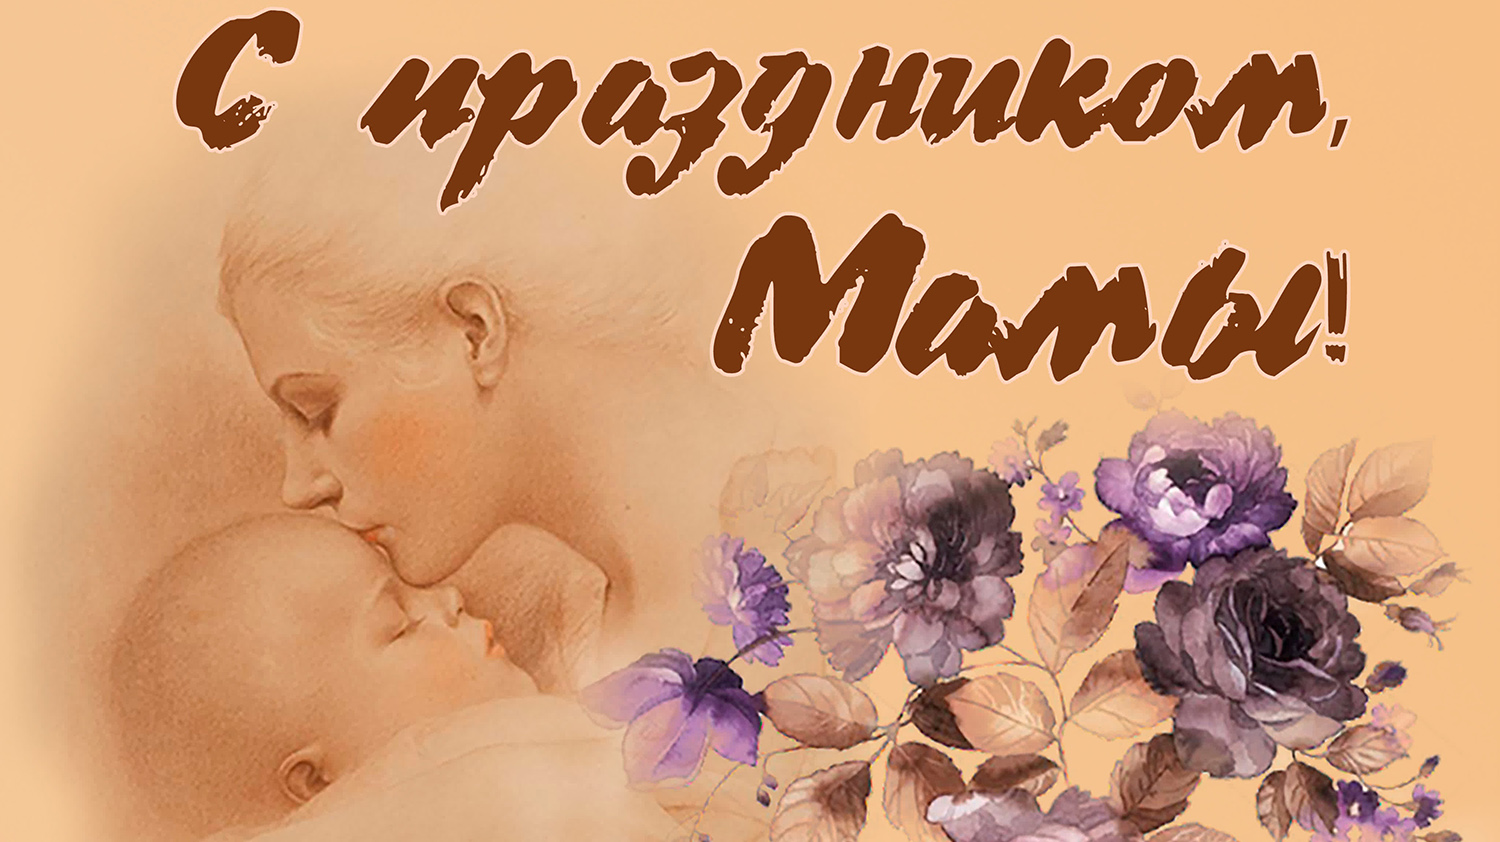 Сегодня в России отмечается День матери